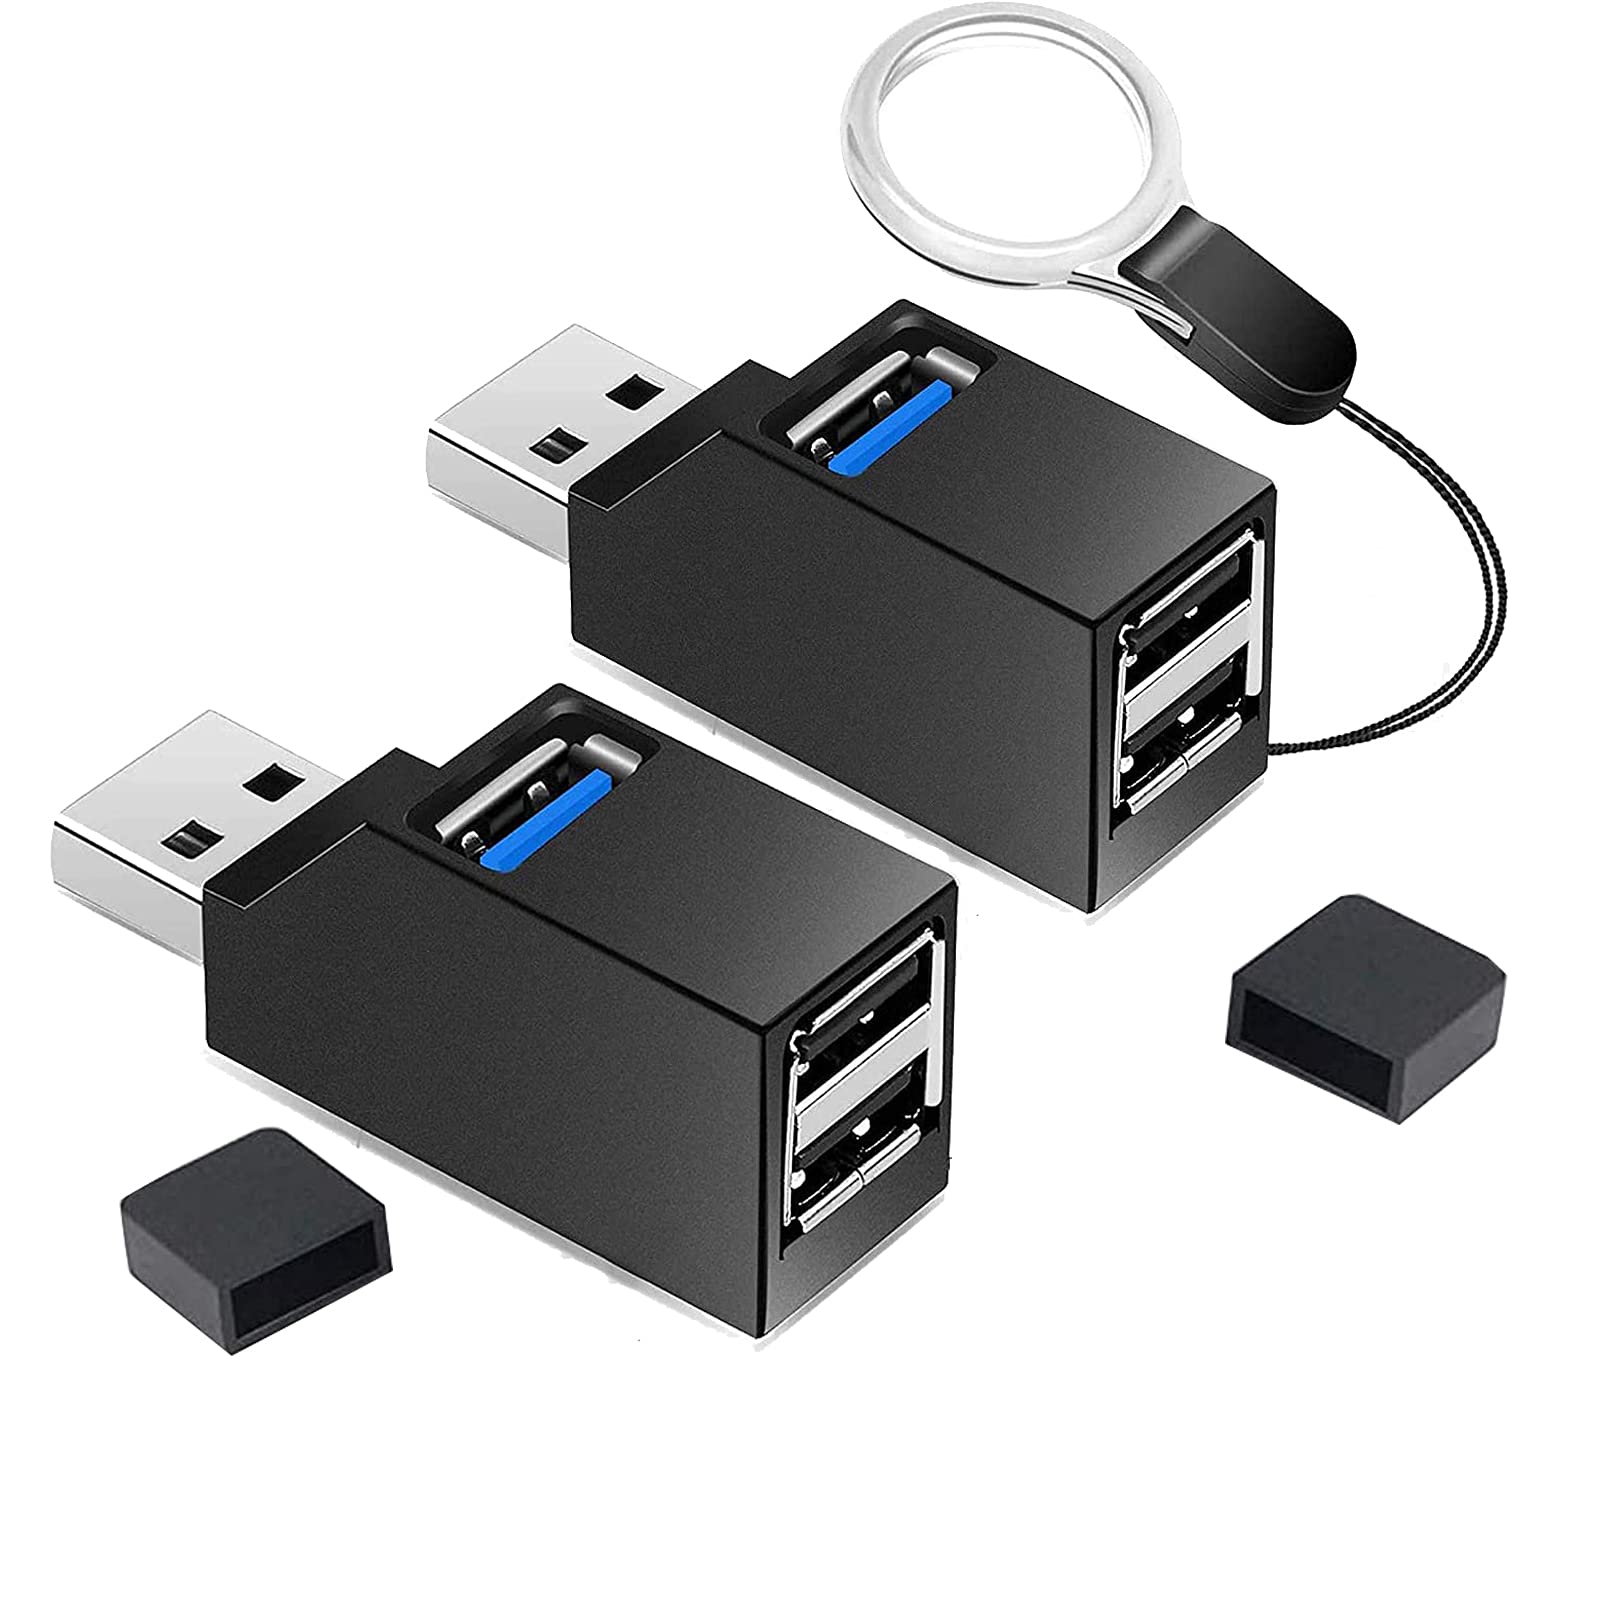 VCOM USBnu 3.0 }3|[g [USB3.0+USB2.0*2|[g]2 g R{nu ^ oXp[ USB|[g f[^] y gѕ֗ @\` RpNg MacBook/iMac/Surface Pro  m[gPCΉ USBnu e[N [g ݑΖ